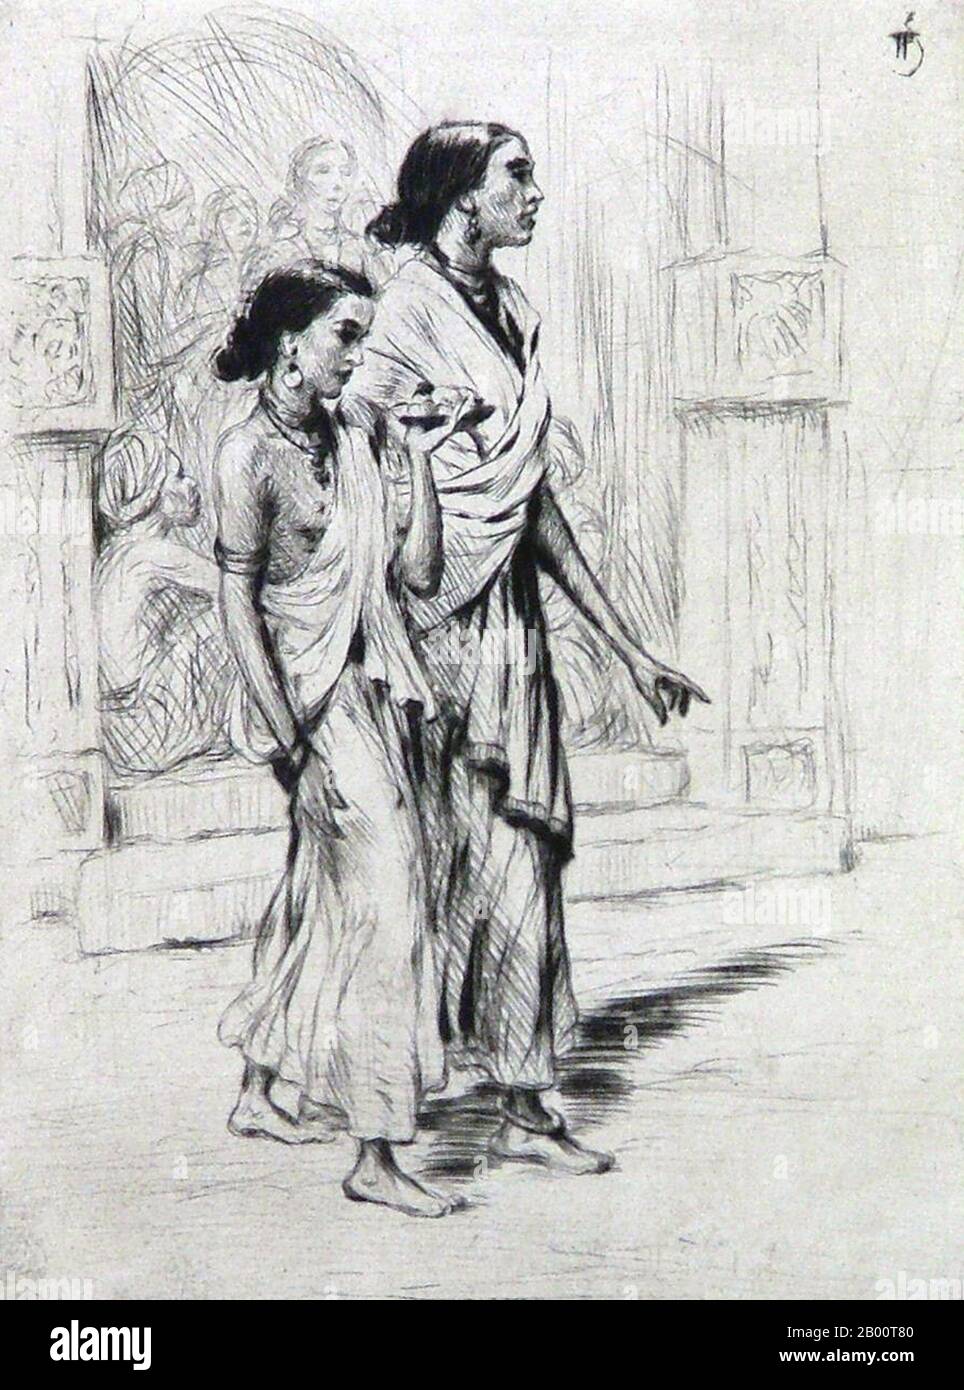 Sri Lanka/Tchécoslovaquie: 'Deux jeunes femmes cinghalaise'. Dessin de T. F. Simon (1877-1942), c. 1928. Tavik Frantisek Simon (1877-1942) est un peintre tchèque, un graveur et un artiste de la coupe du bois. Bien que basé principalement en Europe, ses voyages importants l'ont conduit au Maroc, Ceylan (aujourd'hui Sri Lanka), en Inde, et au Japon, des images de tous ceux qui apparaissent dans son travail artistique. Il meurt à Prague en 1942. Largement ignoré pendant l'ère communiste en Tchécoslovaquie, son travail a reçu une plus grande attention ces dernières années. Banque D'Images